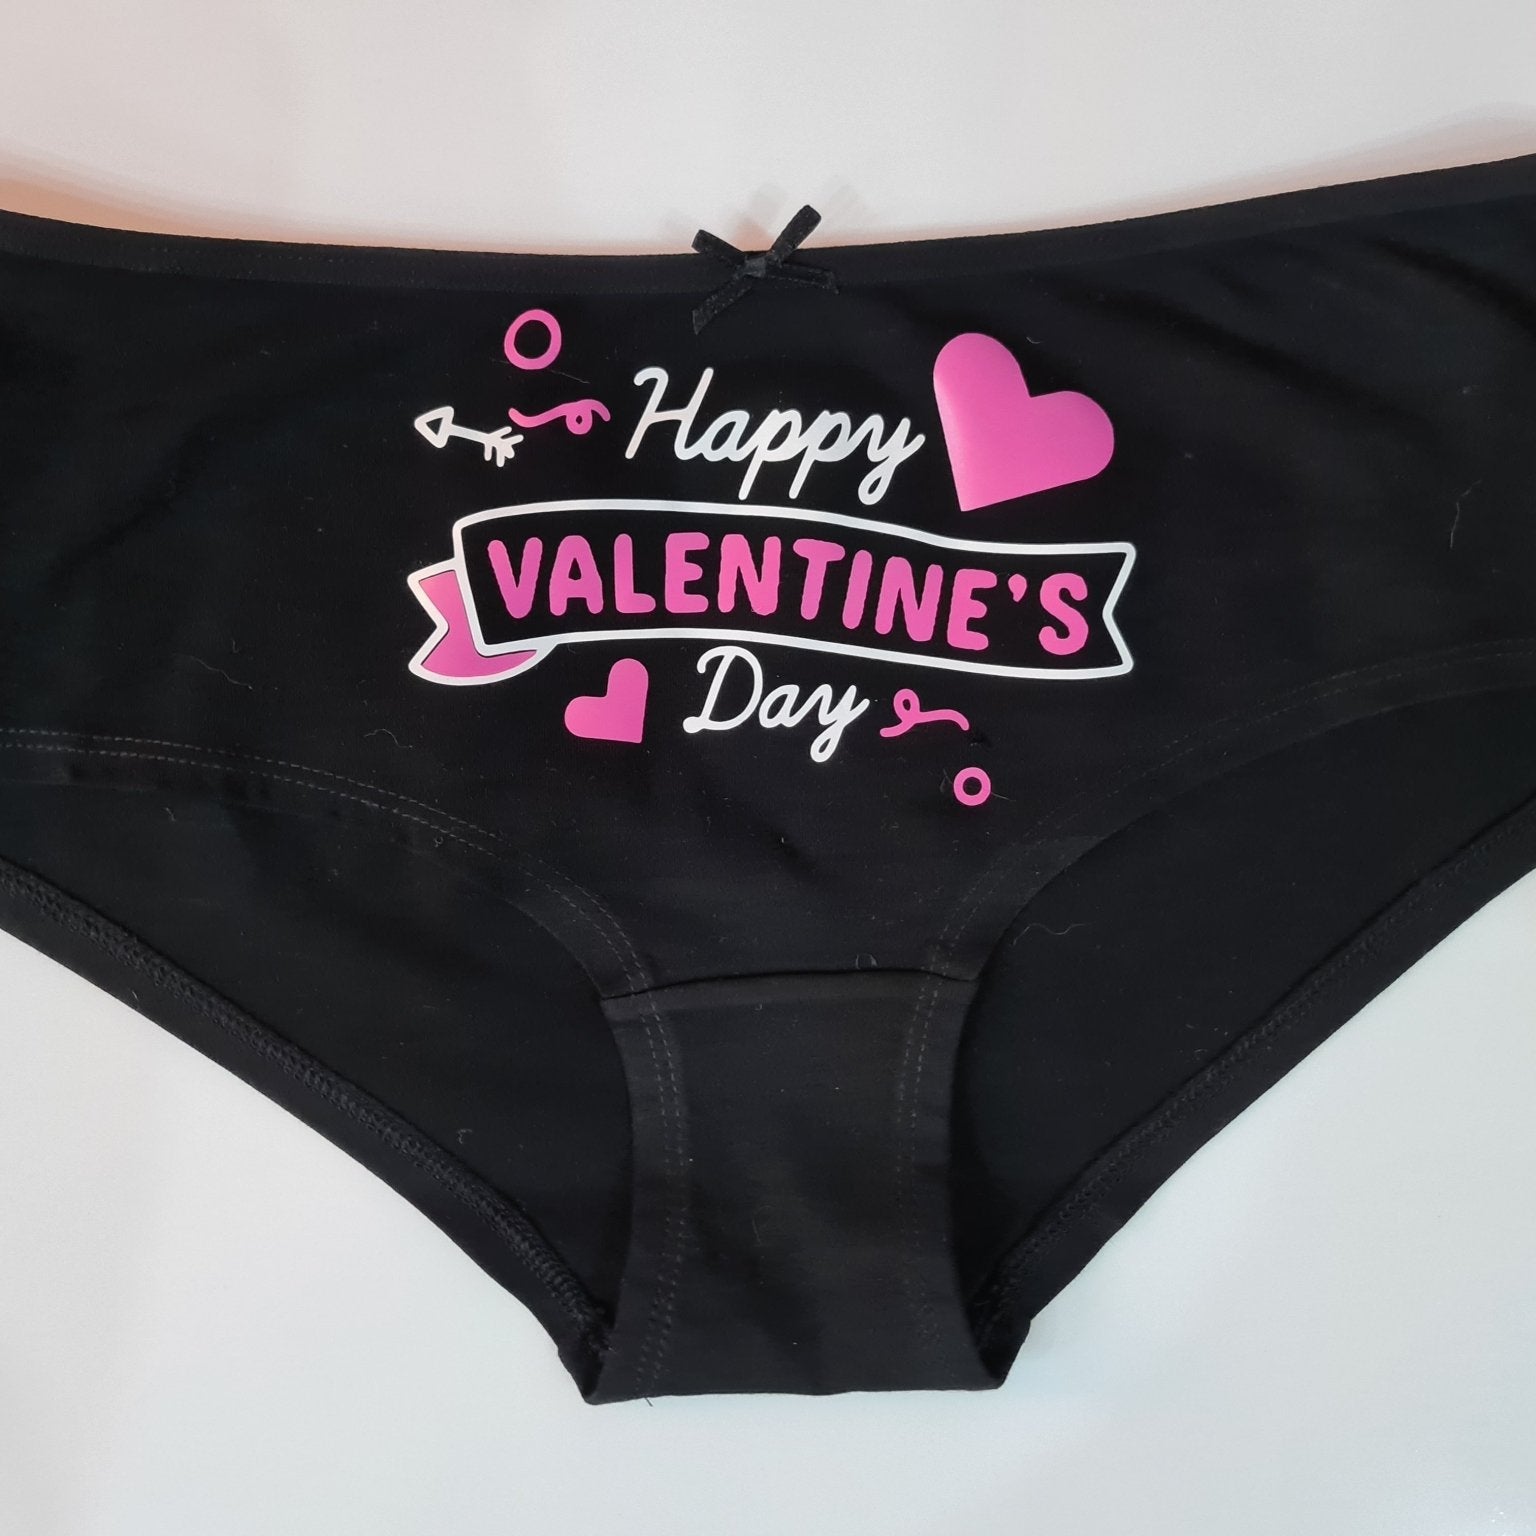 Women underwear - Happy Valentine's Day - Etba3lly